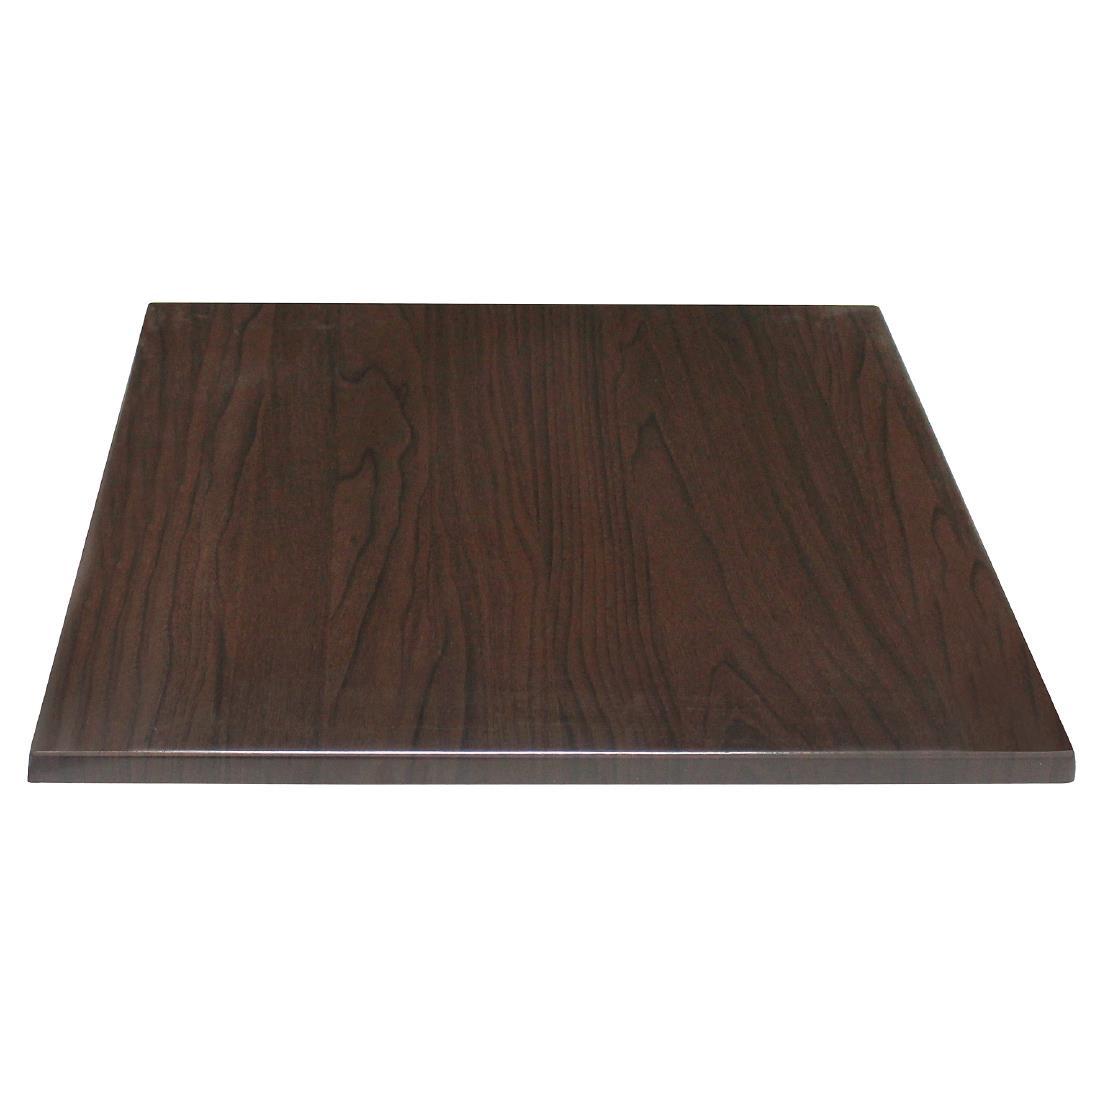 Bolero Pre-drilled Square Table Top Dark Brown 700mm - GG639  - 1